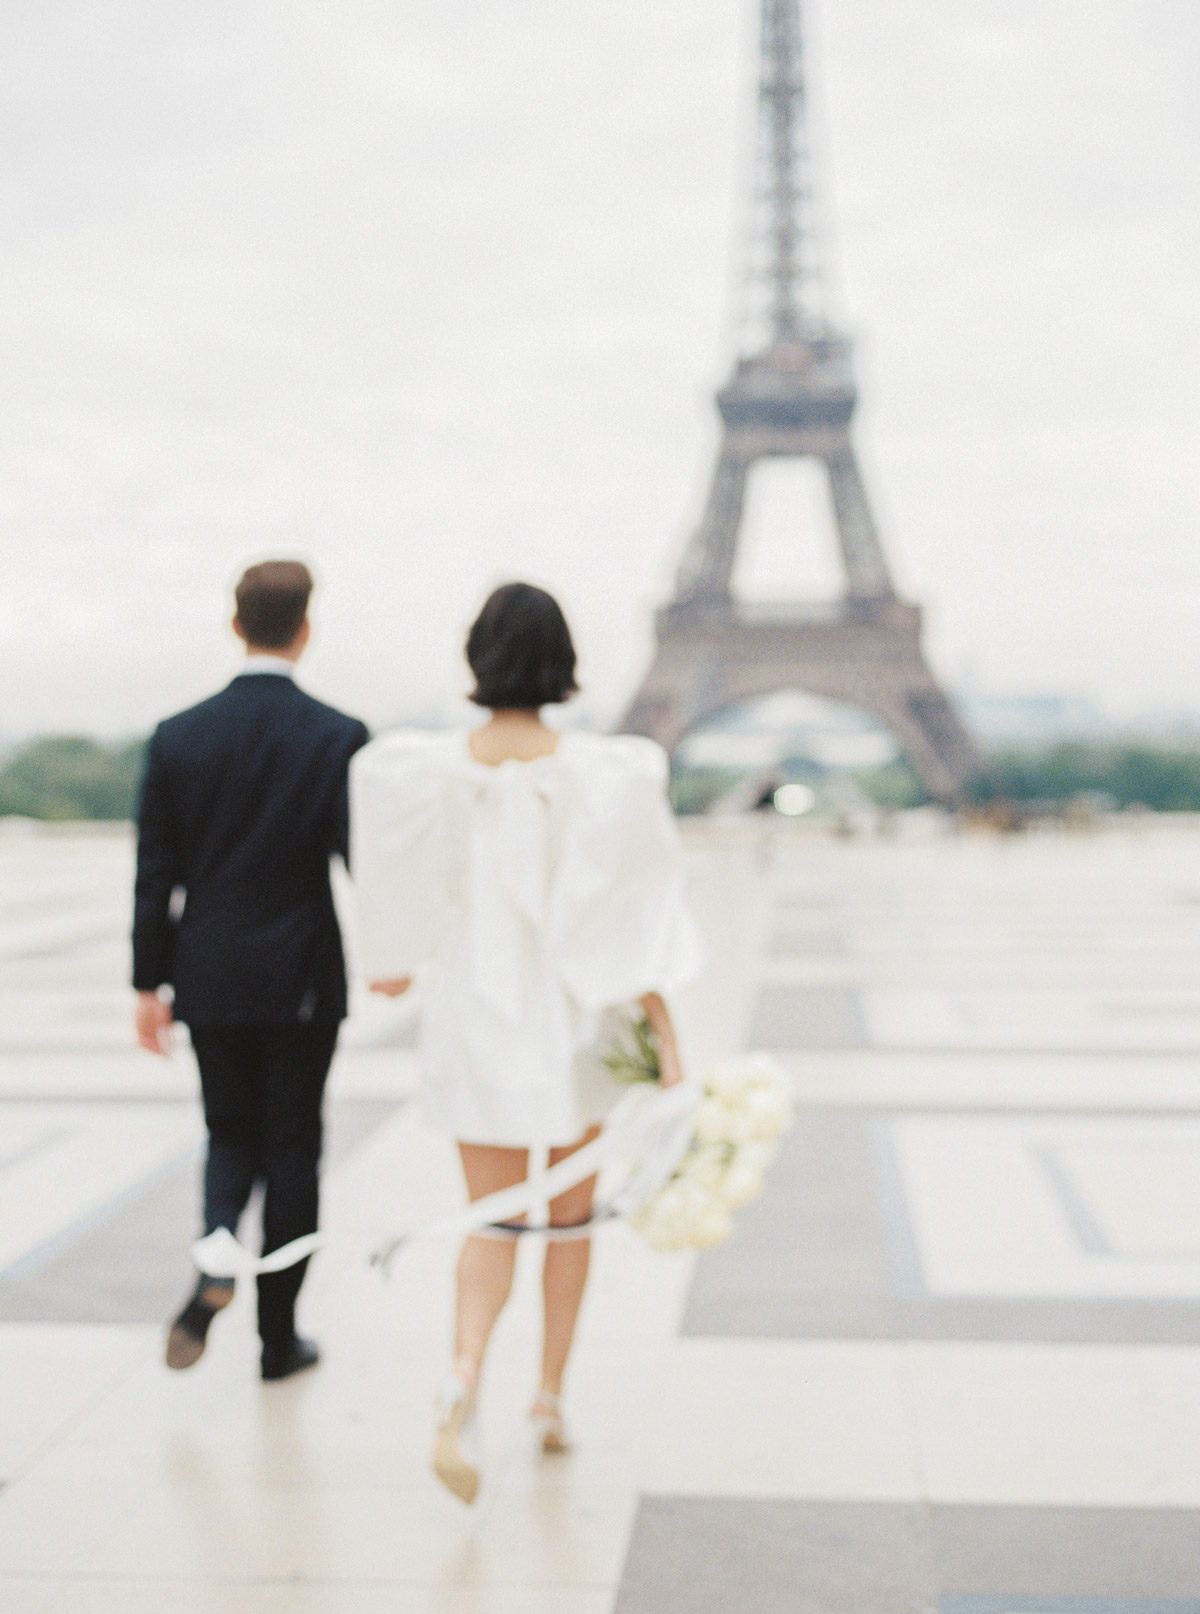 Fotoshooting in Paris, Eifelturm - Die Hochzeitsfotografen